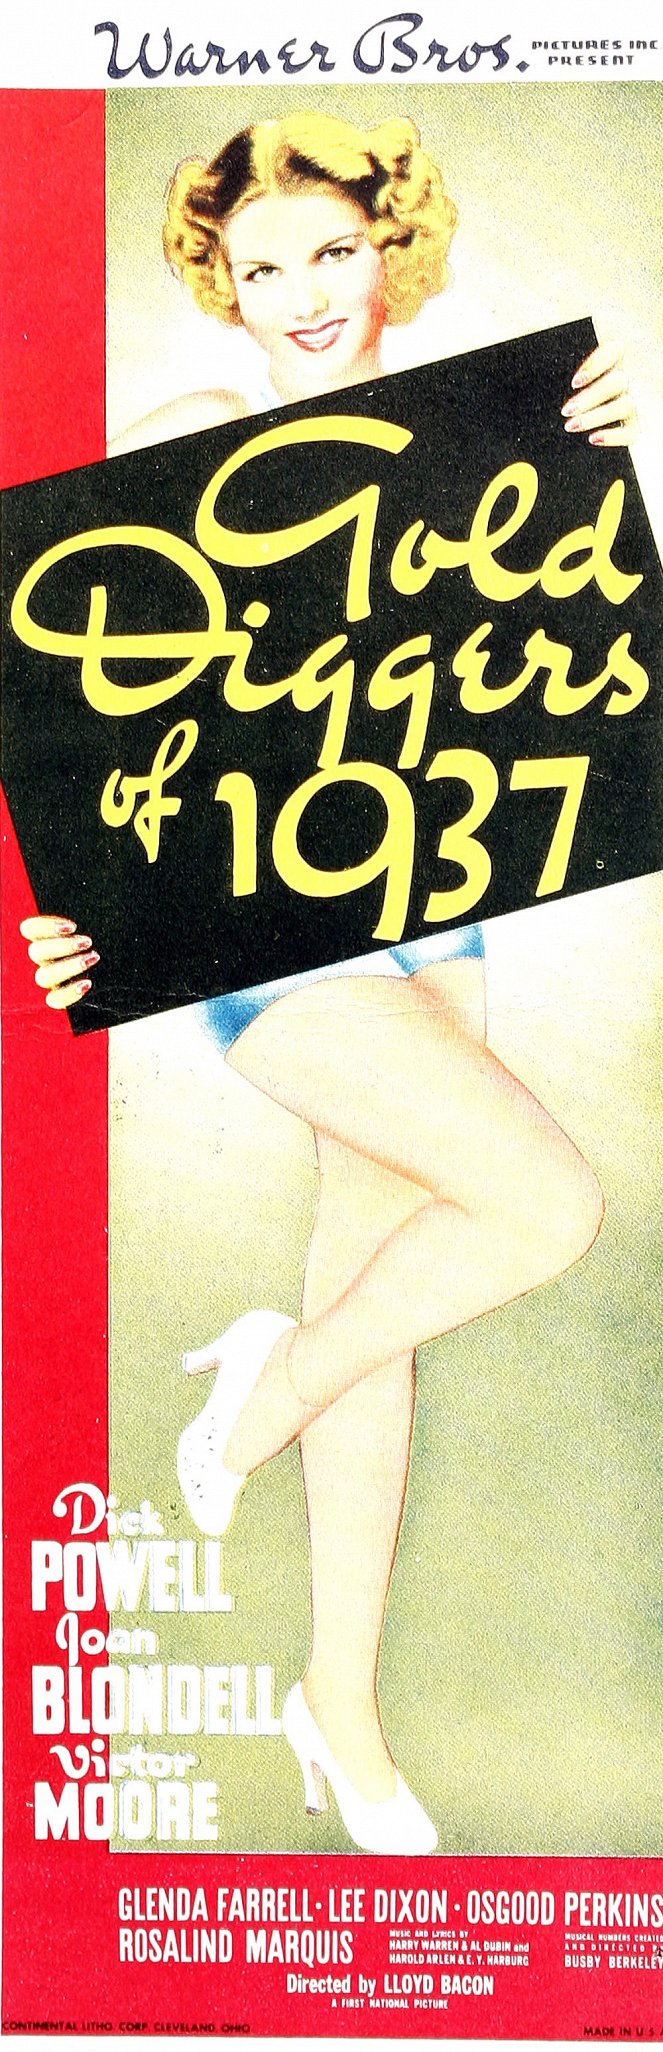 Kultakalat 1937 - Julisteet